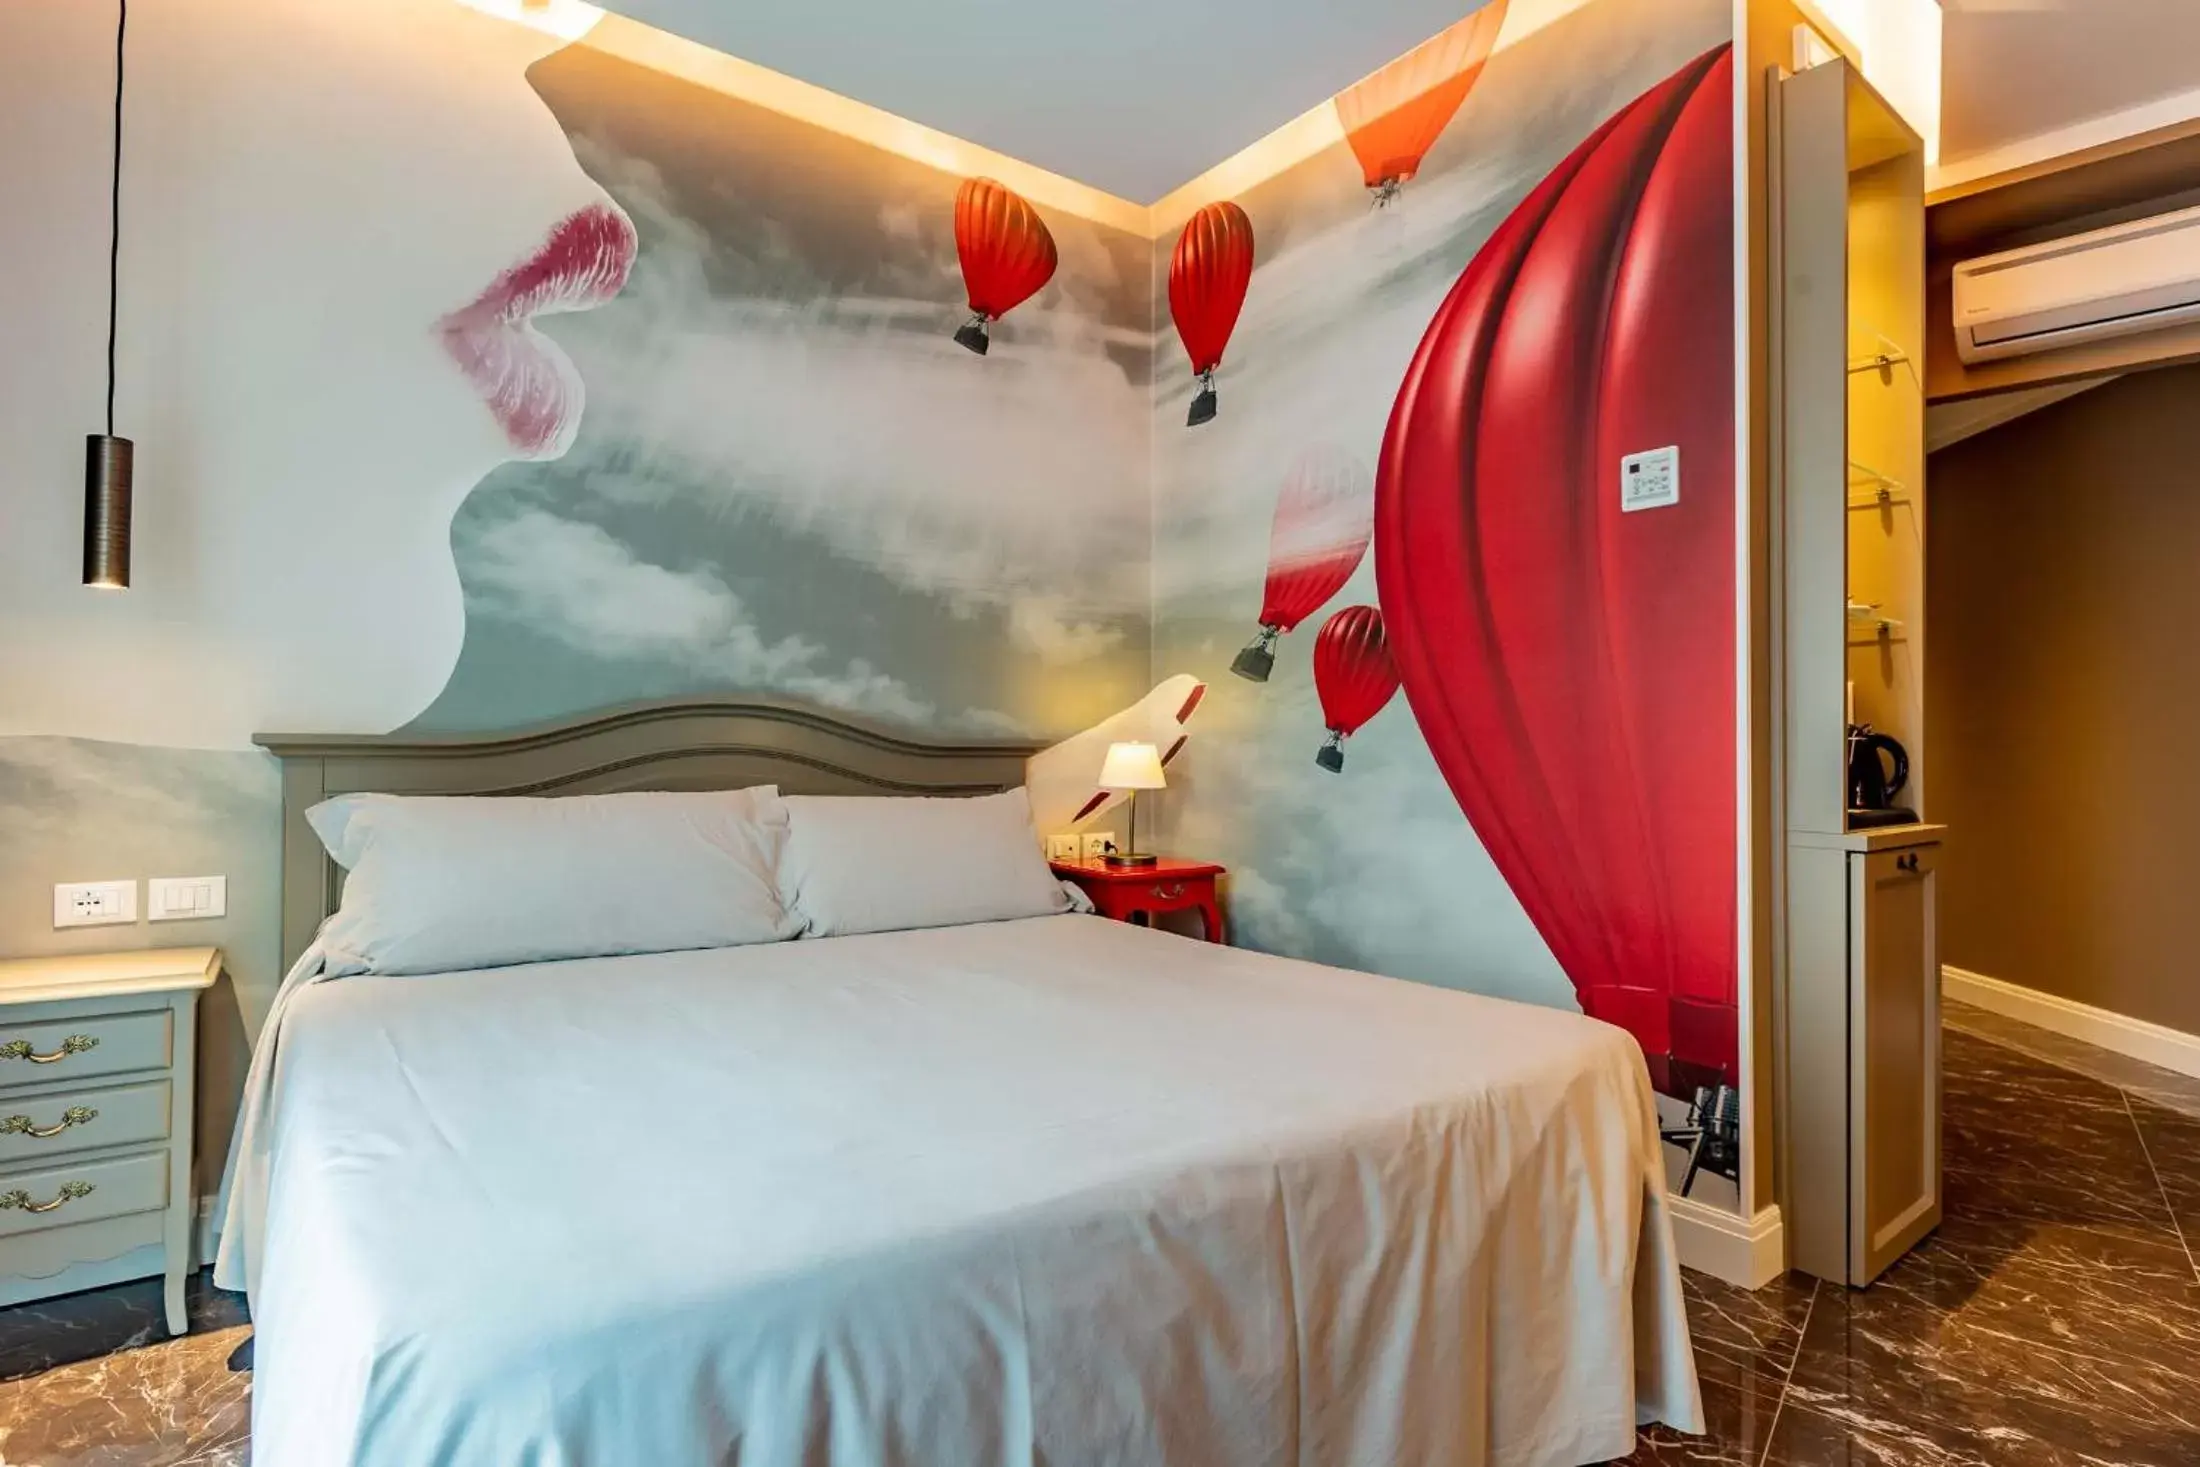 Bed in Art Hotel Ventaglio